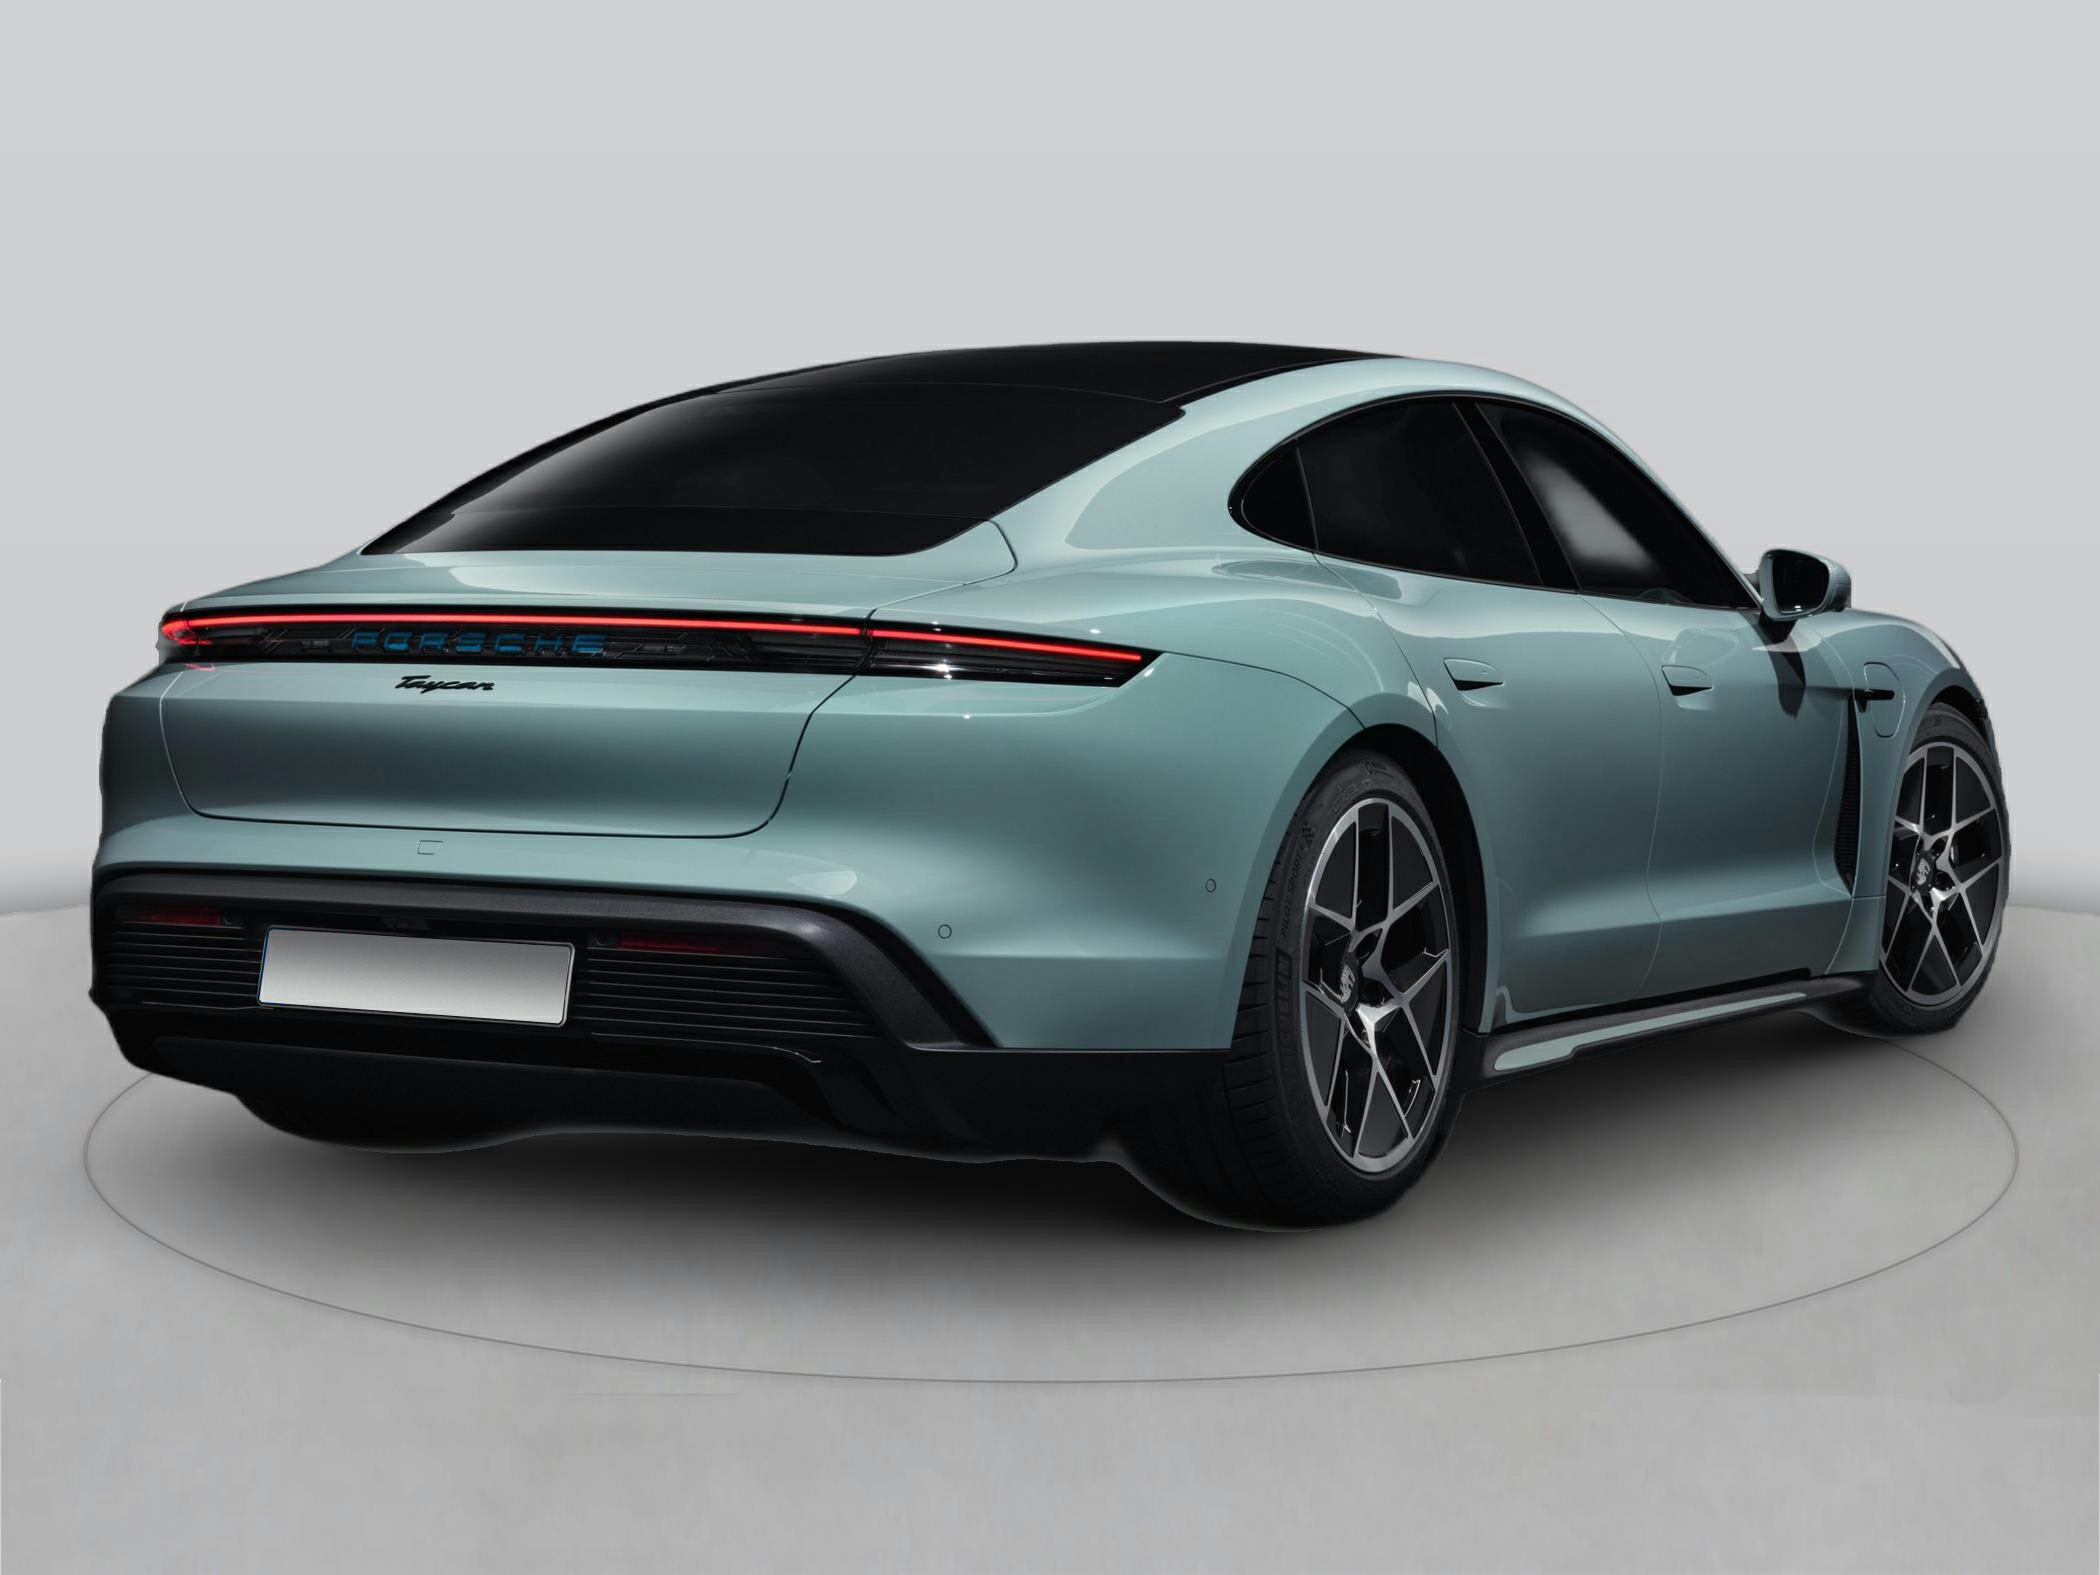 Porsche Taycan Models, Generations & Redesigns | Cars.com